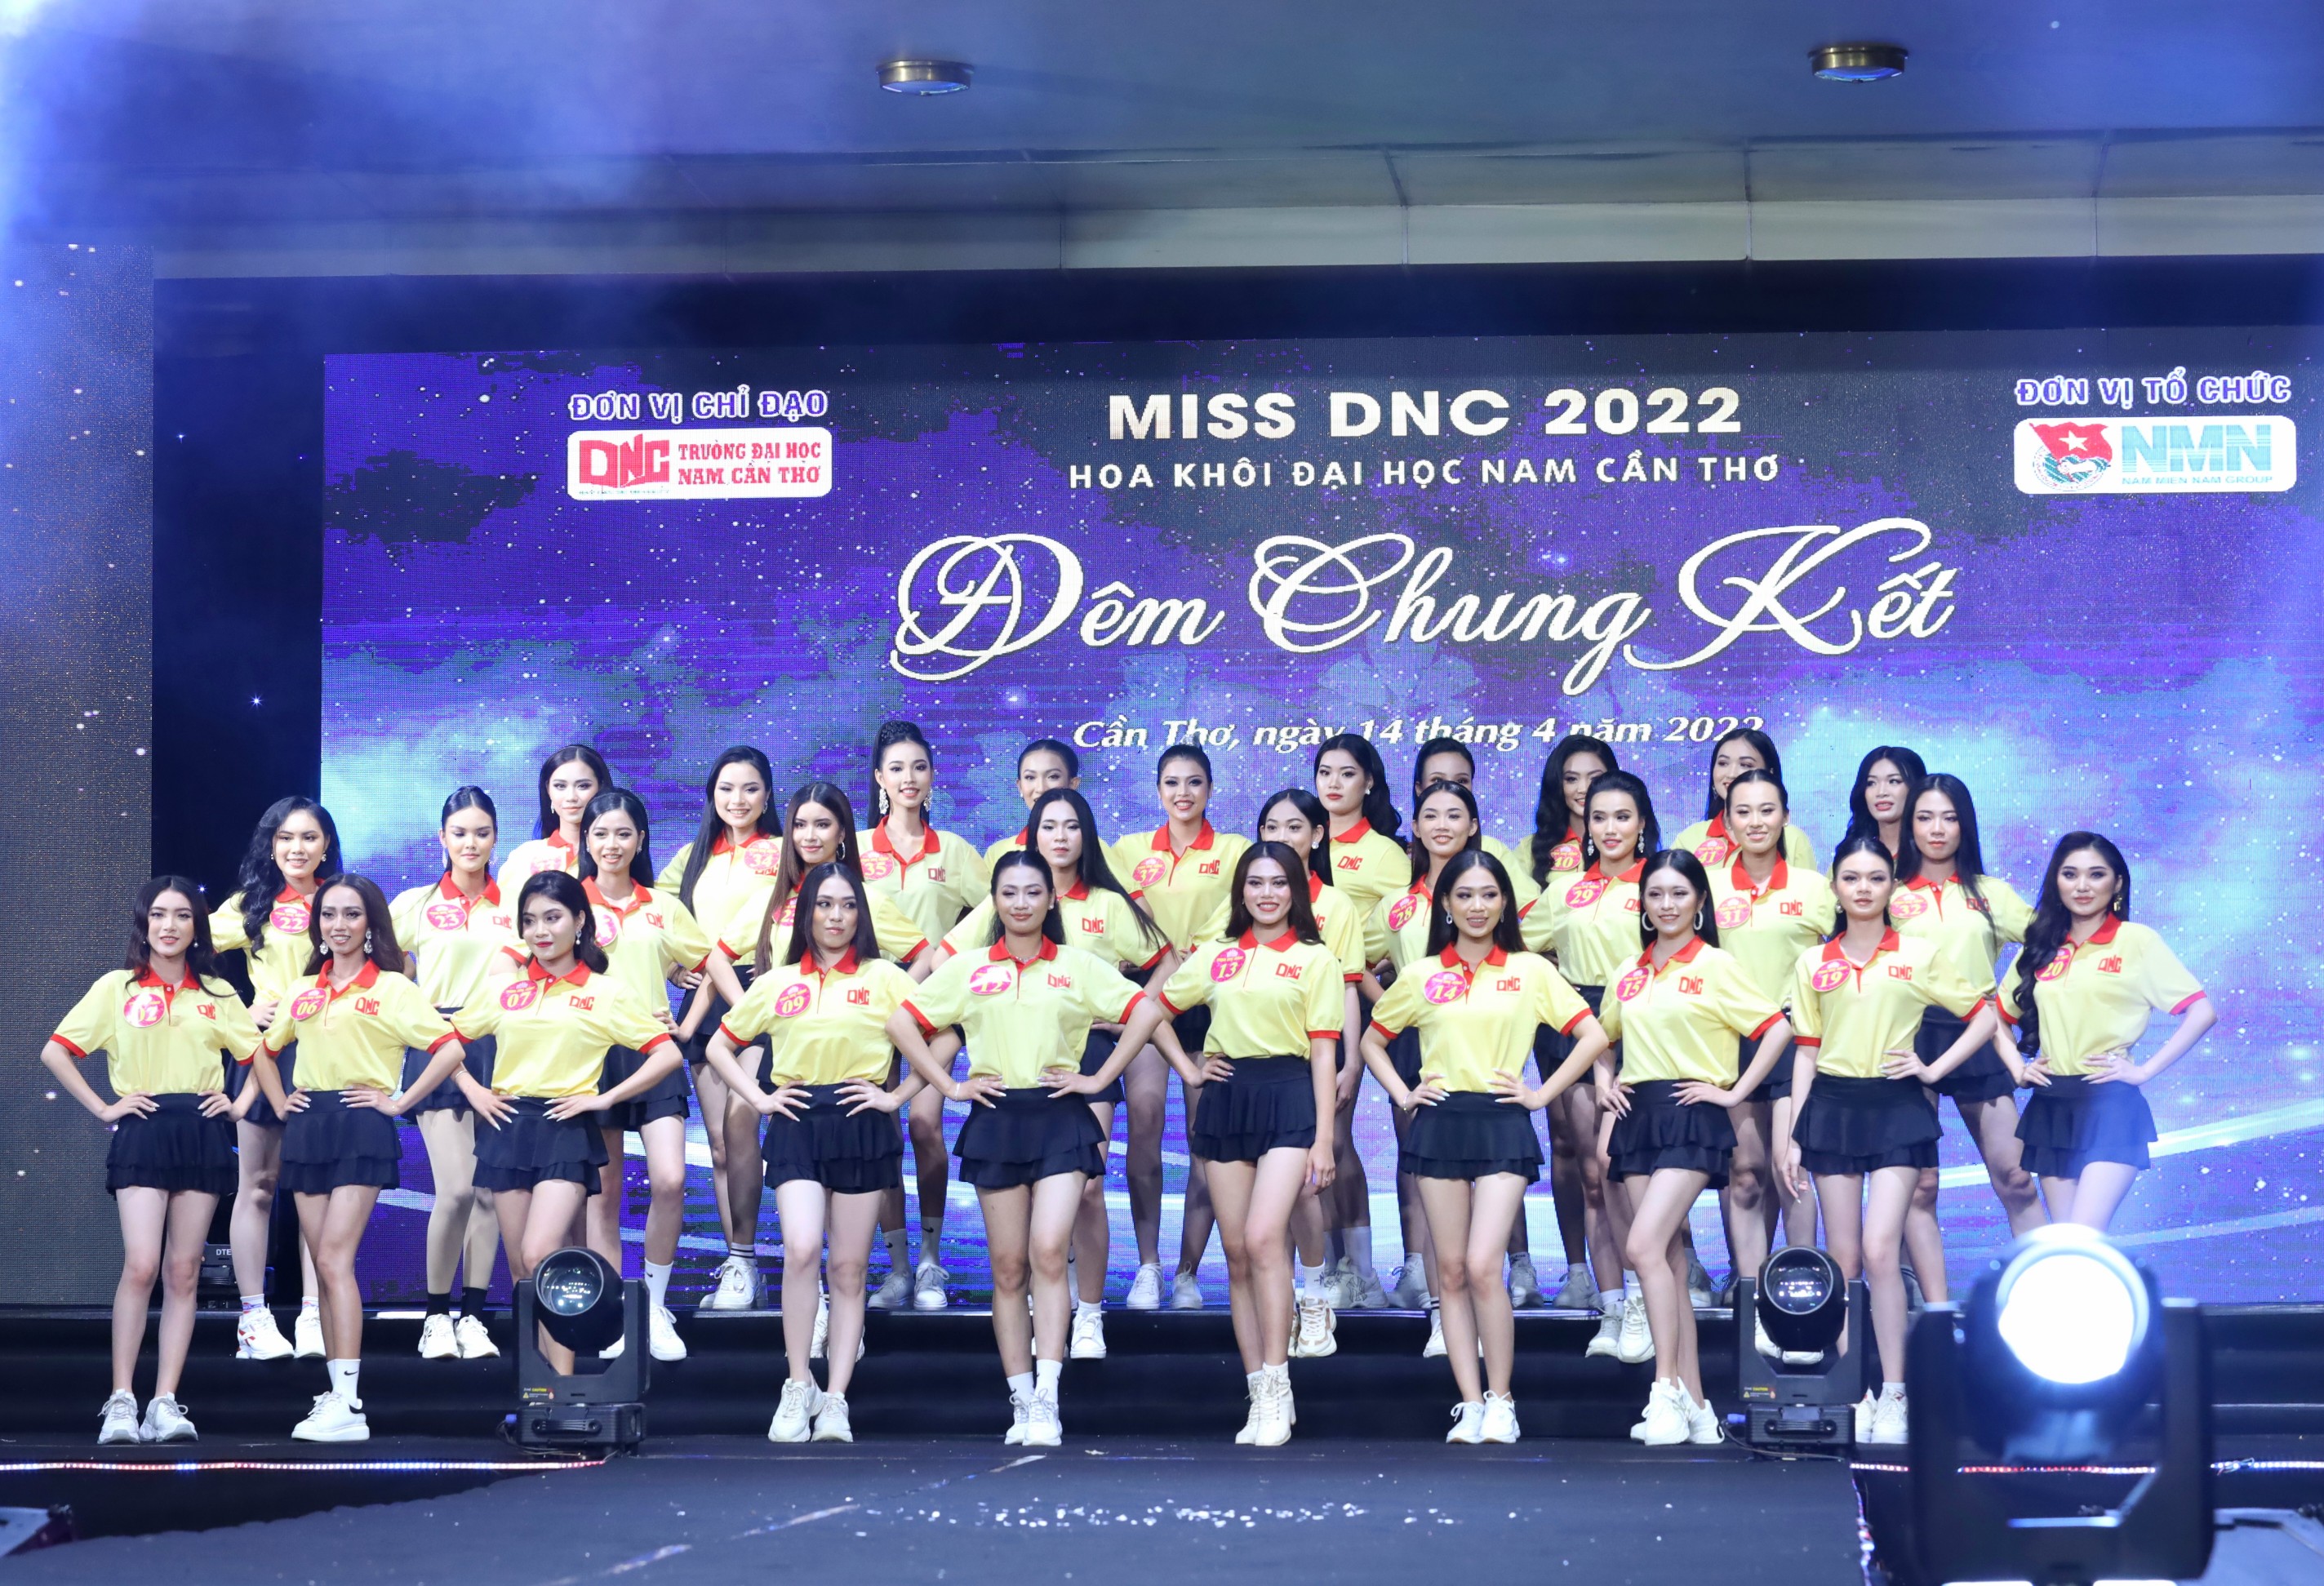 Top 30 thí sinh tham gia đêm chung kết Hoa khôi Đại học Nam Cần Thơ lần thứ VII năm 2022.